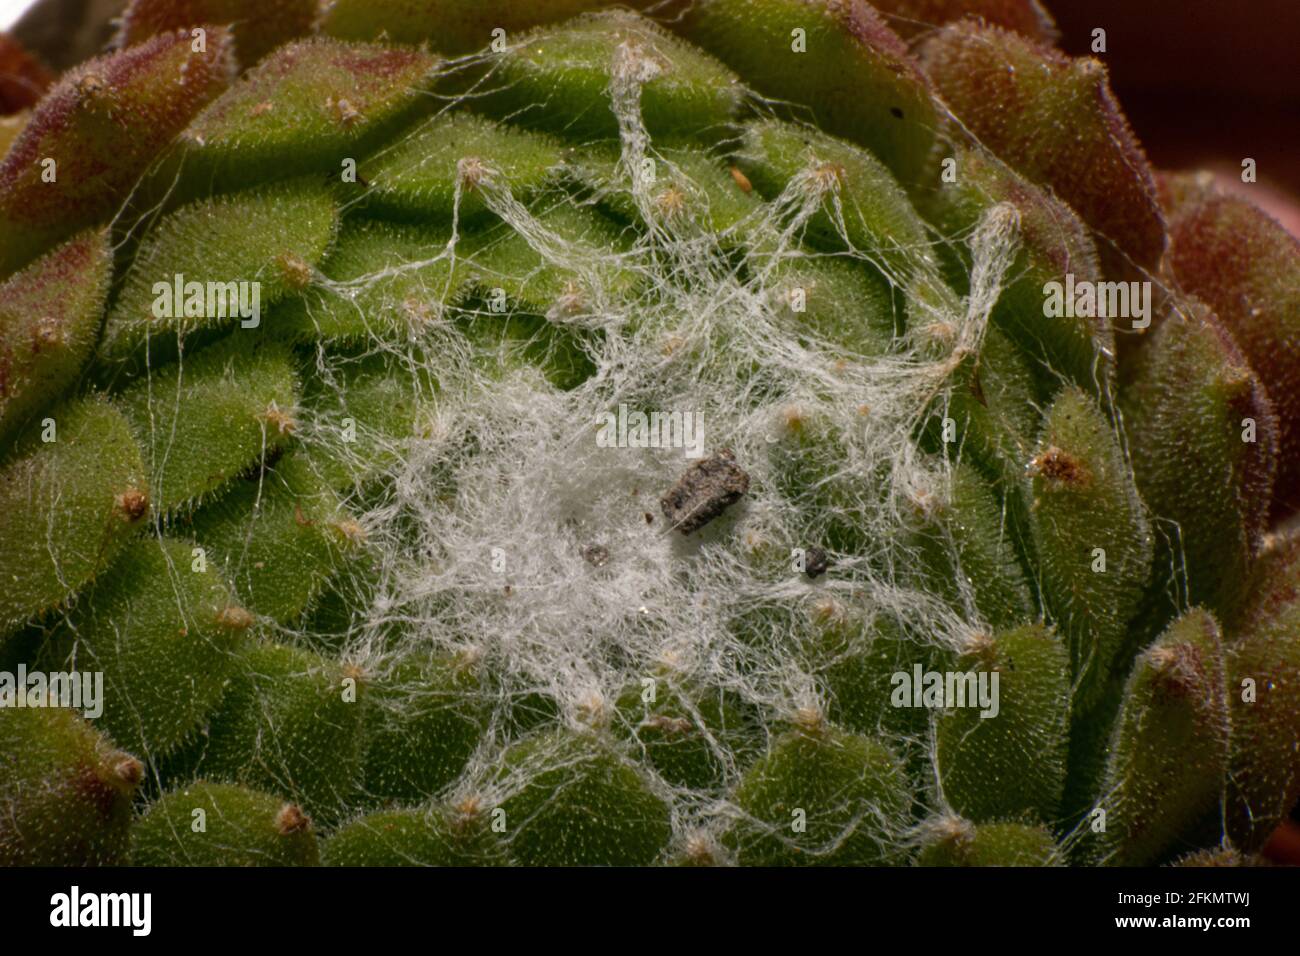 Sempervivum arachnoideum Catus suculenta or succulent web forming creation macro photography Stock Photo